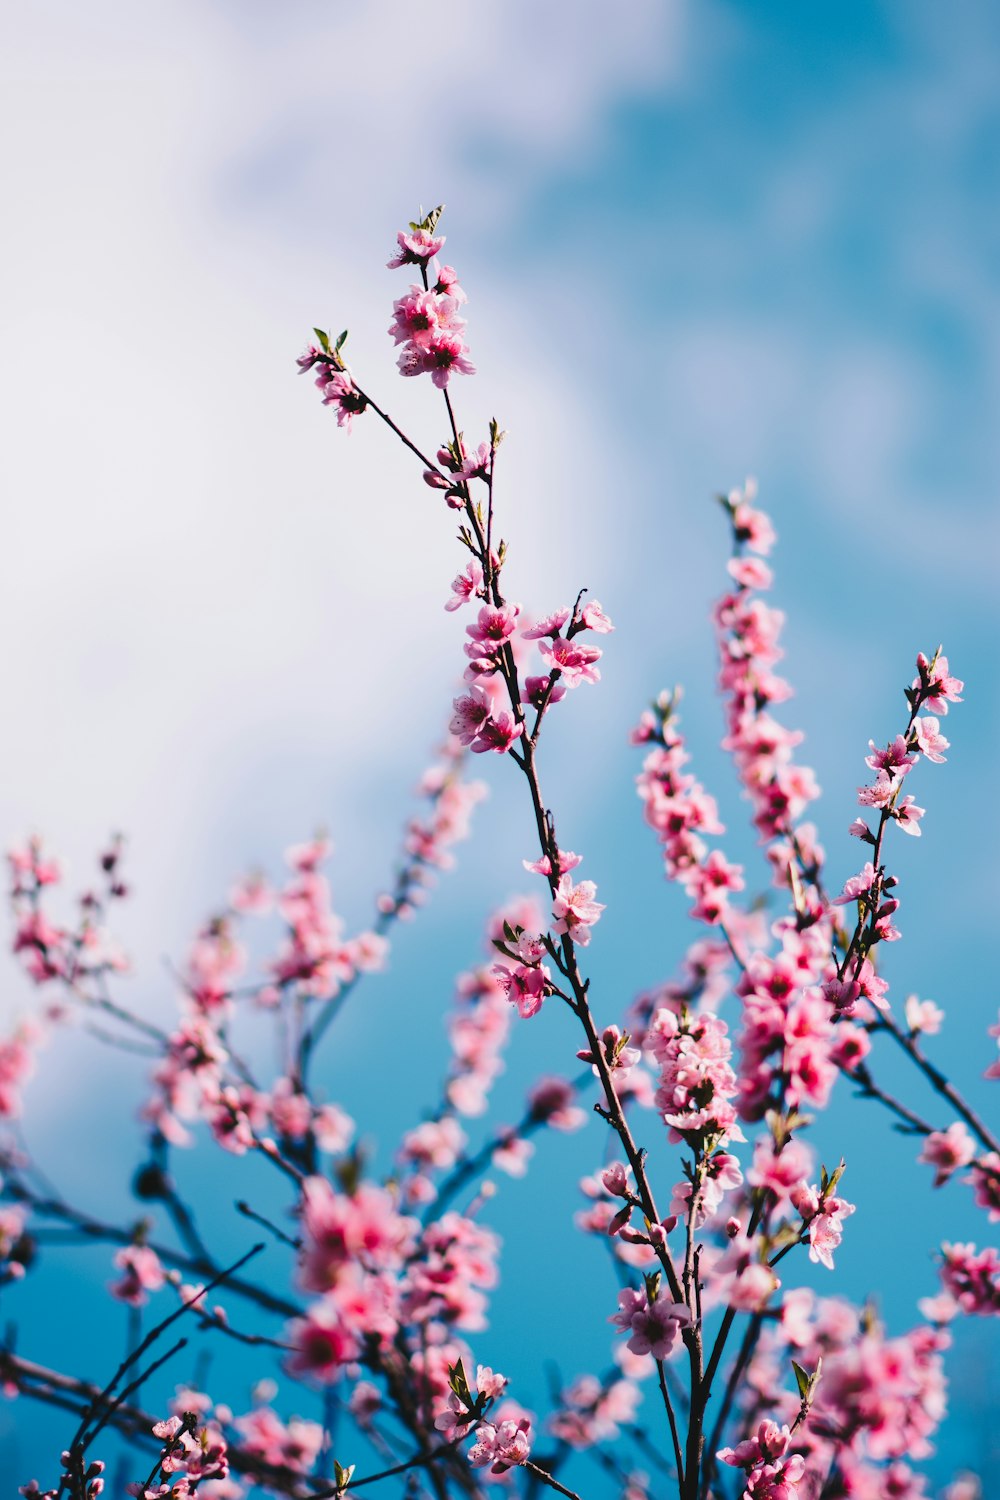 fotografia em close-up das flores de cerejeira cor-de-rosa